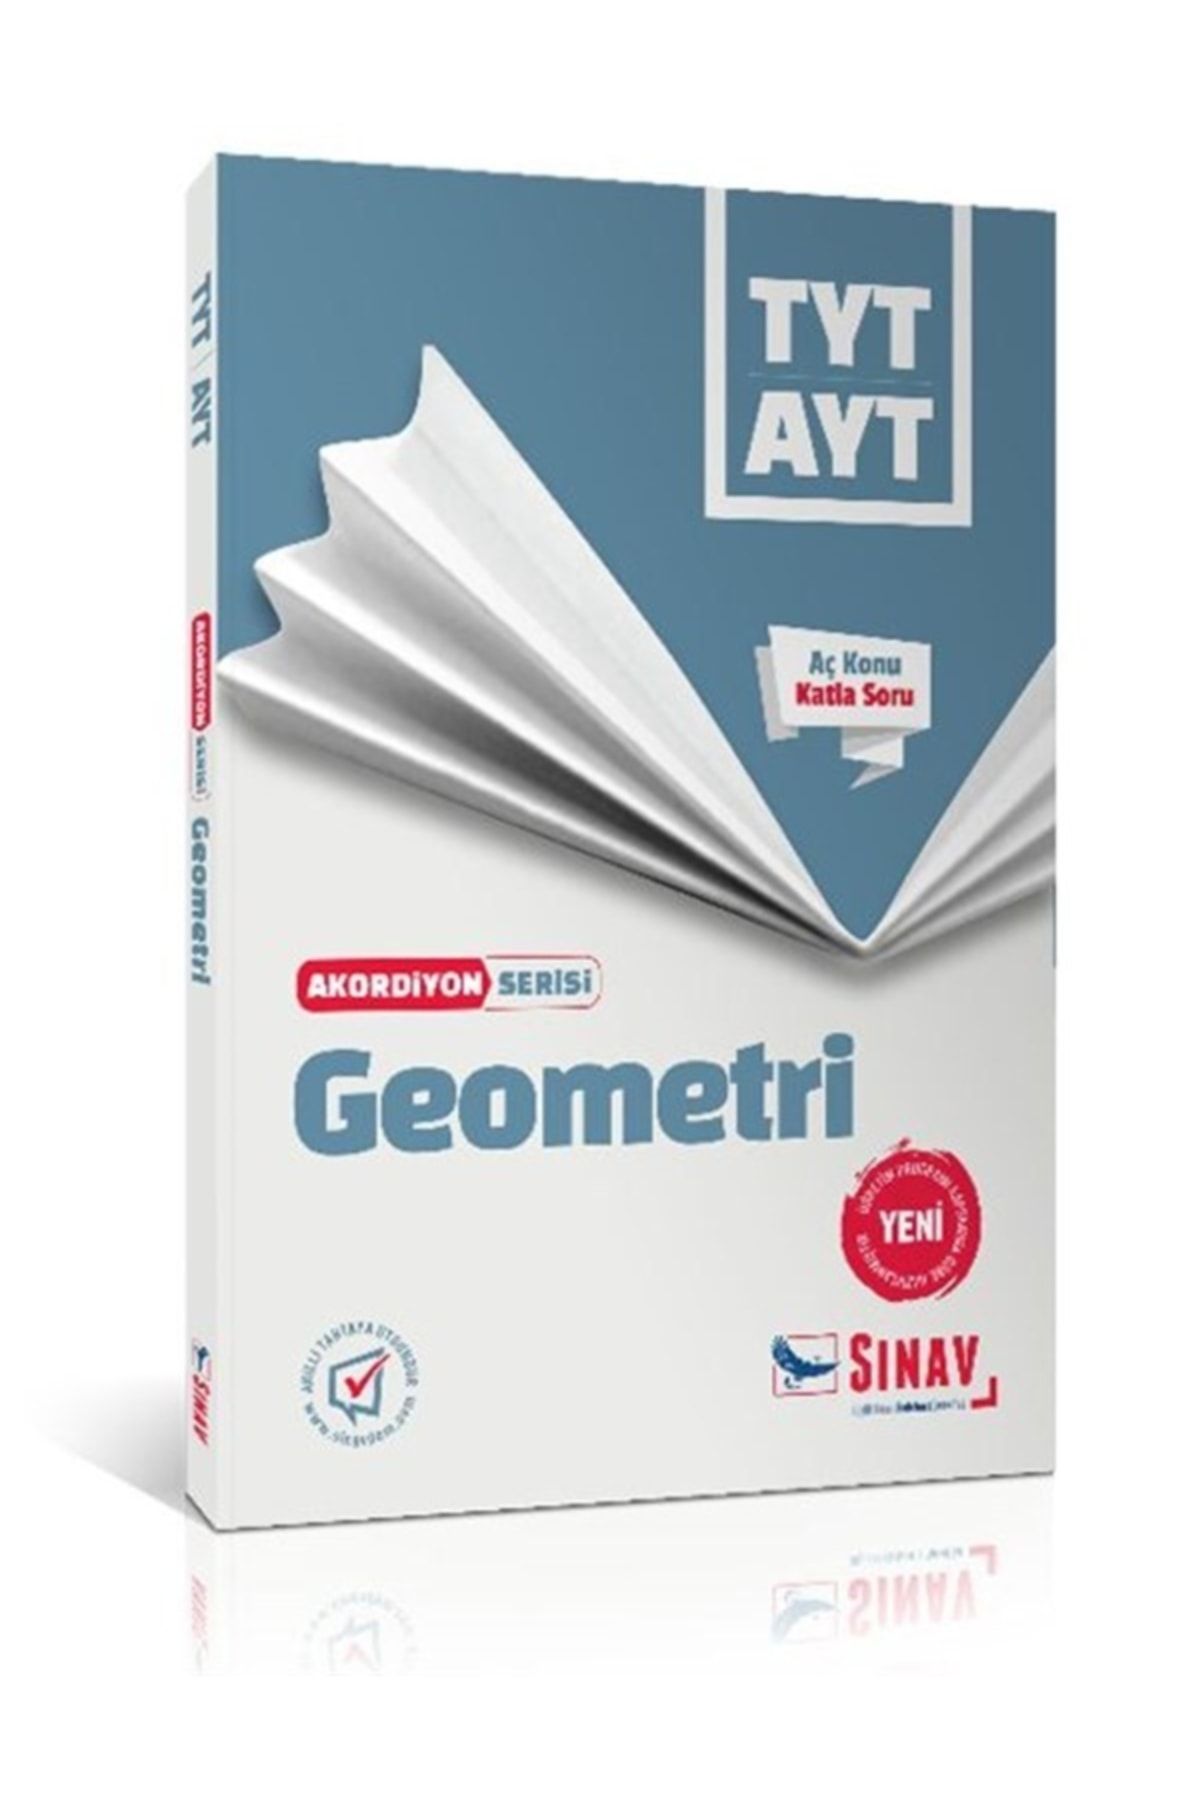 Sınav Yayınları Tyt Ayt Geometri Akordiyon Seri